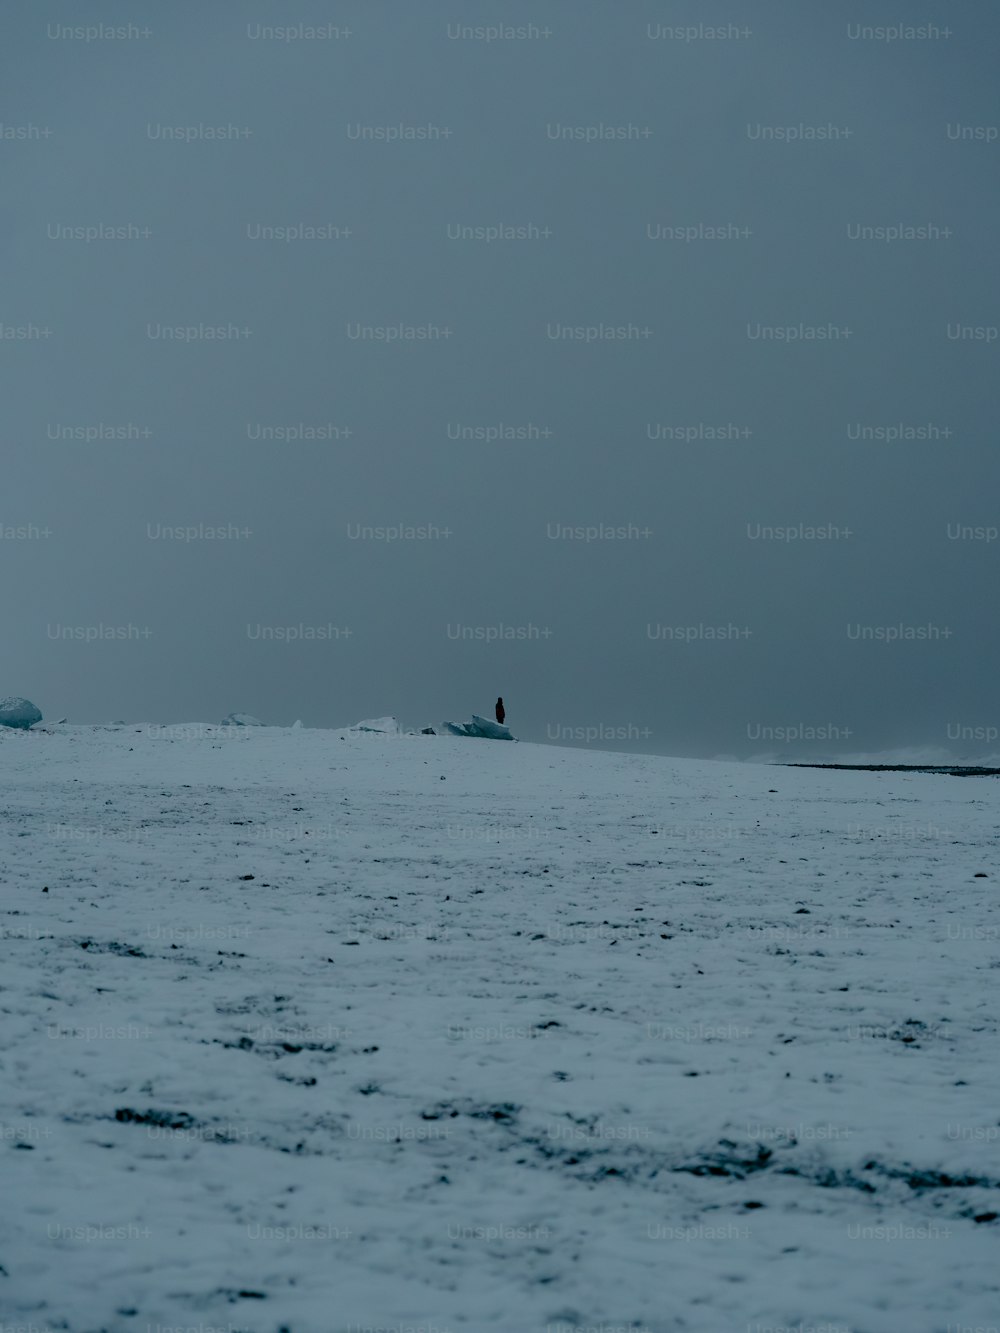 une personne debout sur une planche de surf au milieu de l’océan